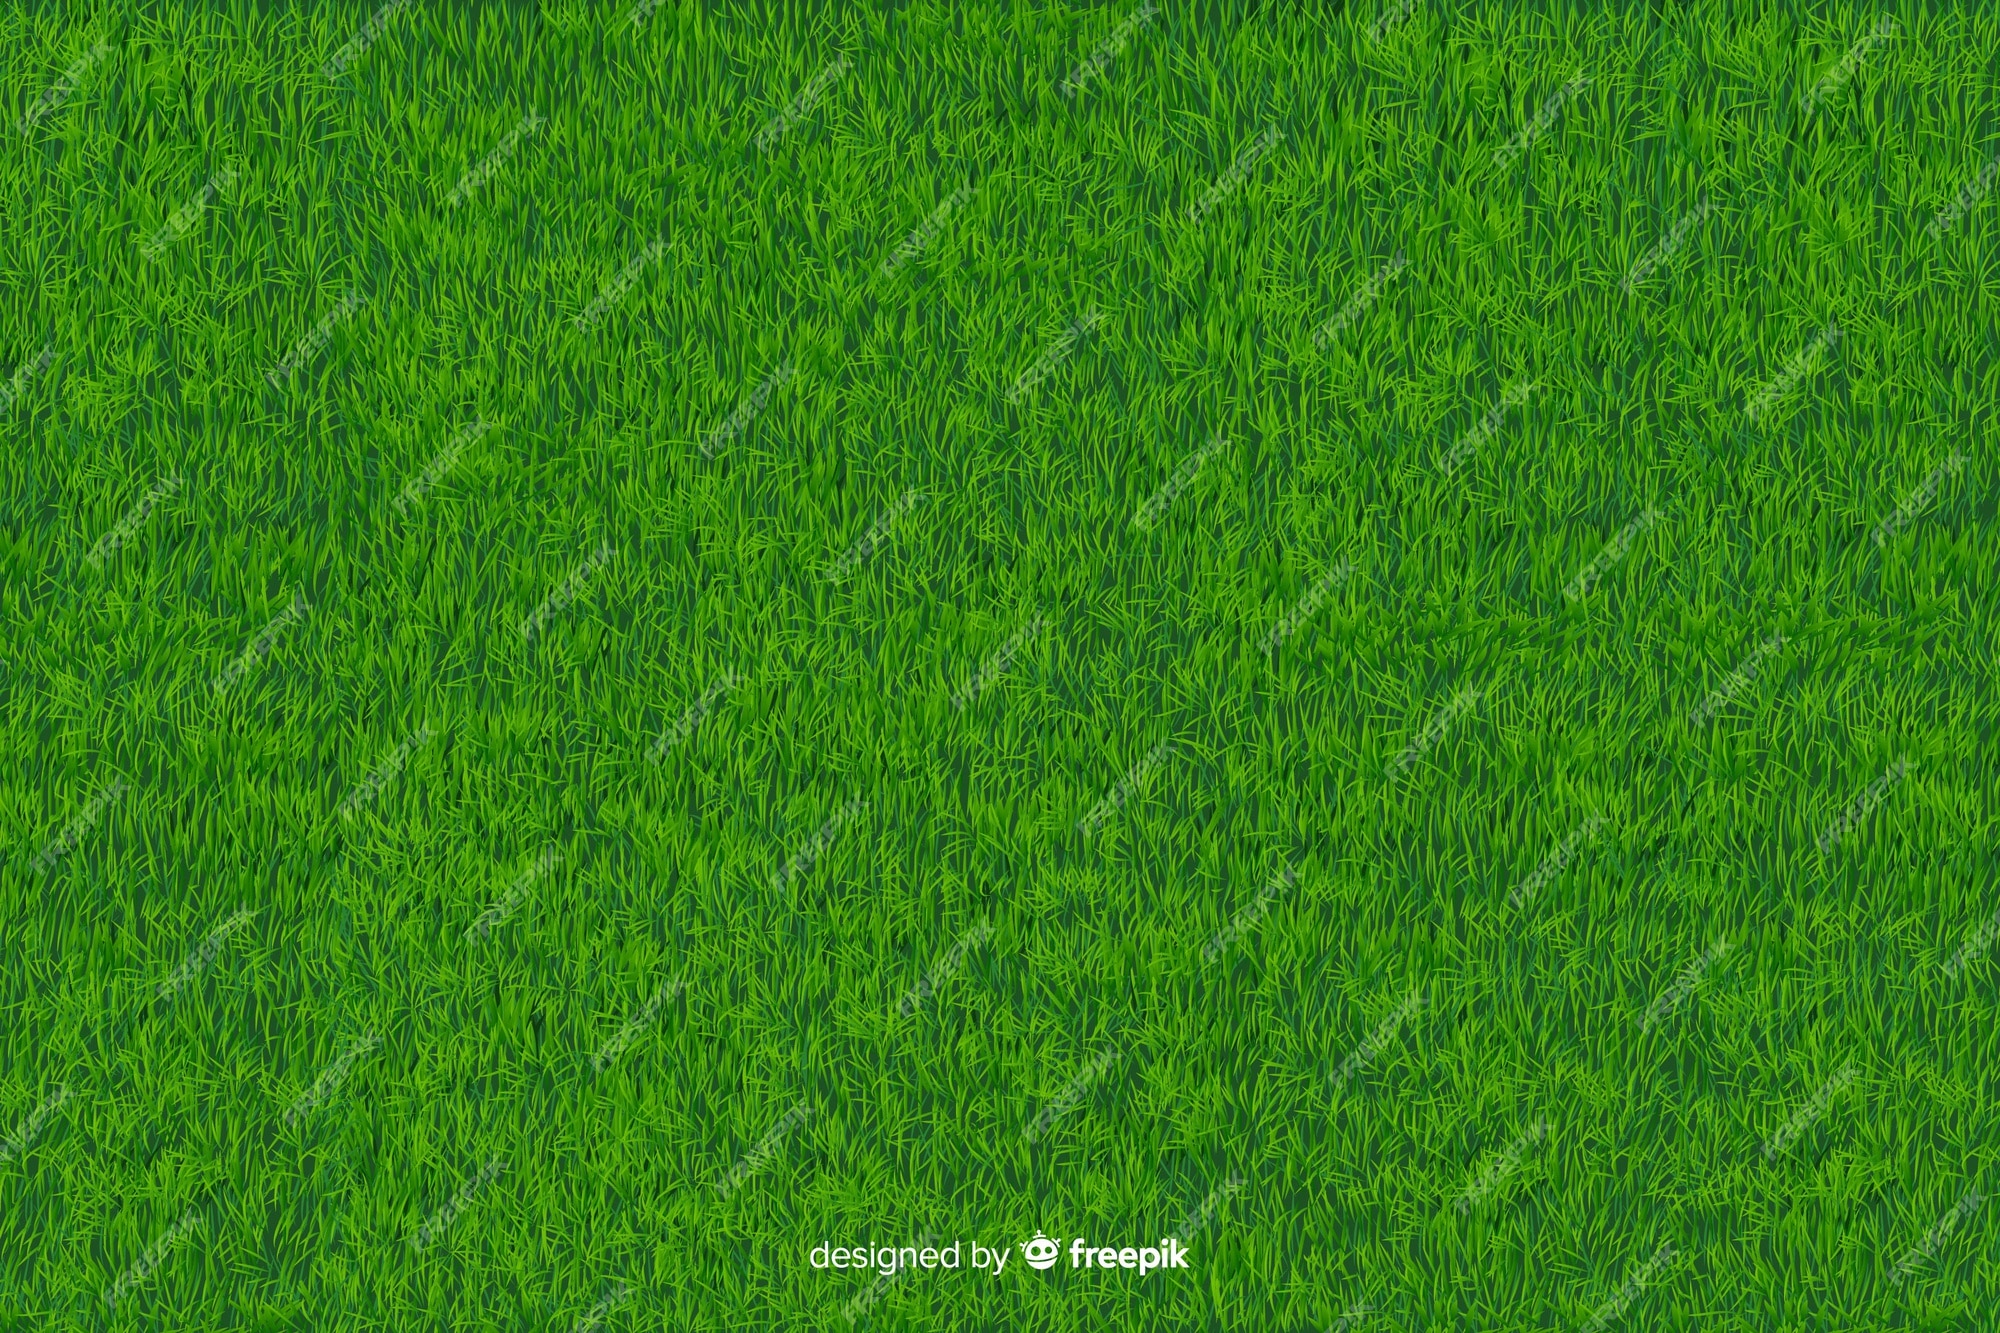 Muốn có một hình nền đầy sức sống và đẹp mắt với màu xanh của cỏ, hãy đến với Vector hình nền cỏ xanh miễn phí. Bộ sưu tập này mang lại những mẫu hình nền cỏ xanh vector độc đáo và sáng tạo, giúp tăng tính thẩm mỹ cho thiết kế của bạn.